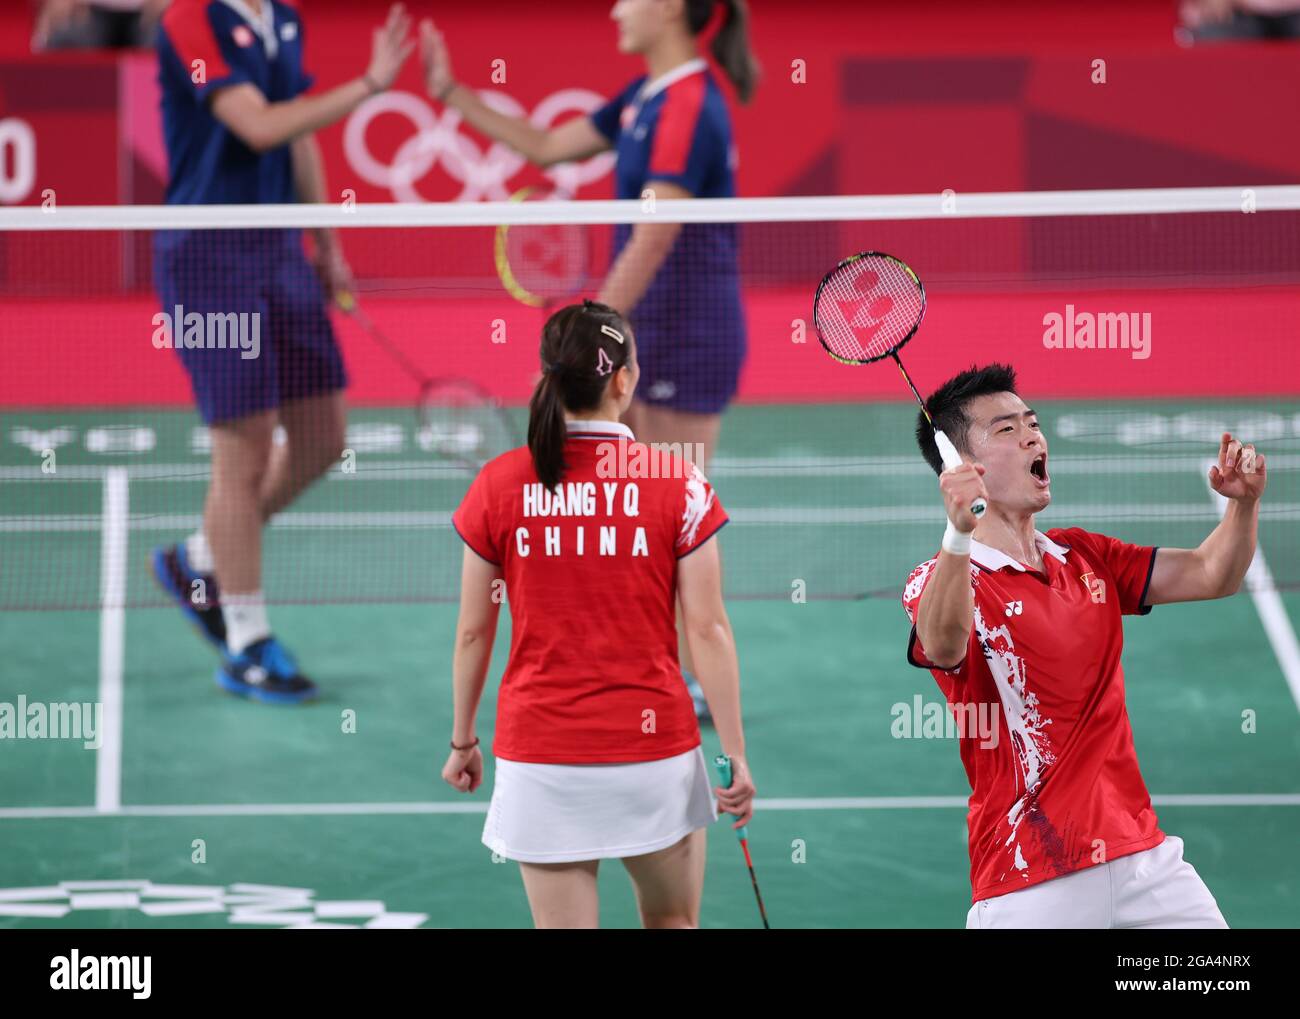 Tokyo, Japan. 29th July, 2021. Zheng Siwei (R)/Huang Yaqiong of China react  during the badminton mixed doubles semifinal between Zheng Siwei/Huang  Yaqiong of China and Tang Chun Man/Tse Ying Suet of Hong